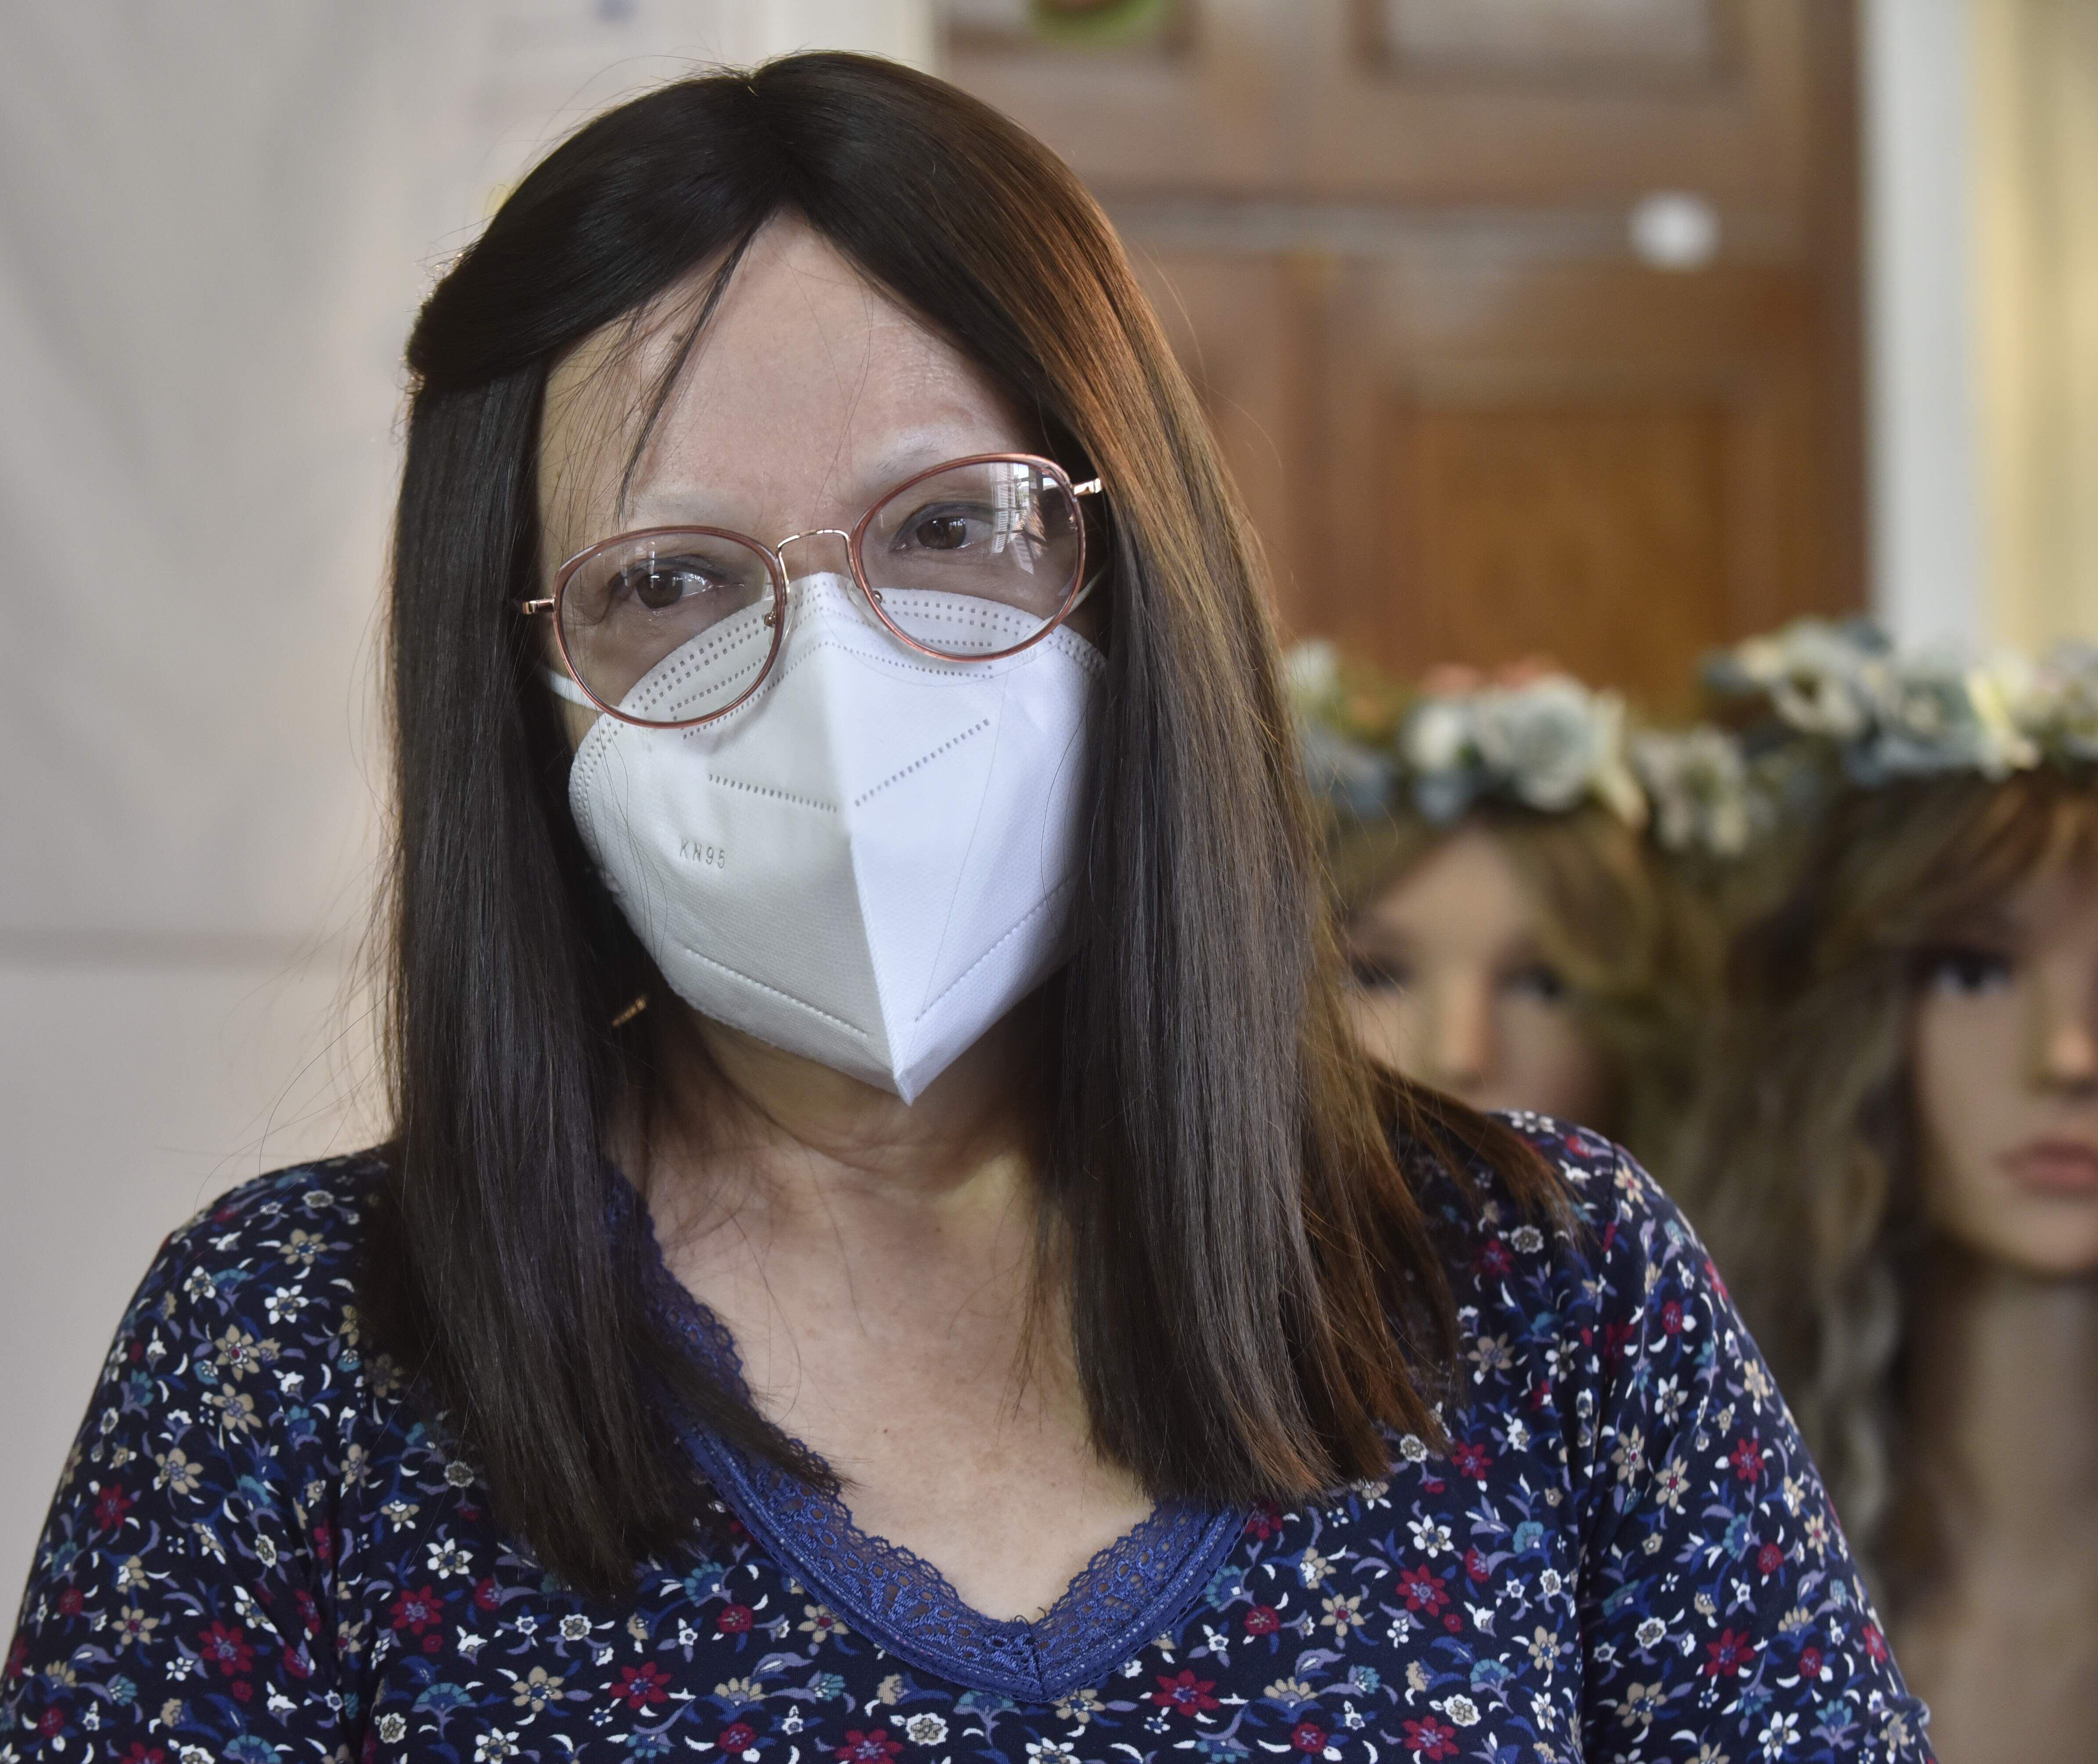 Verónica García, tiene 60 años y fue diagnosticada con cáncer de mama. Ella es de Minga Guazú, Alto Paraná, y recibió la donación de una peluca. "Estoy muy contenta".